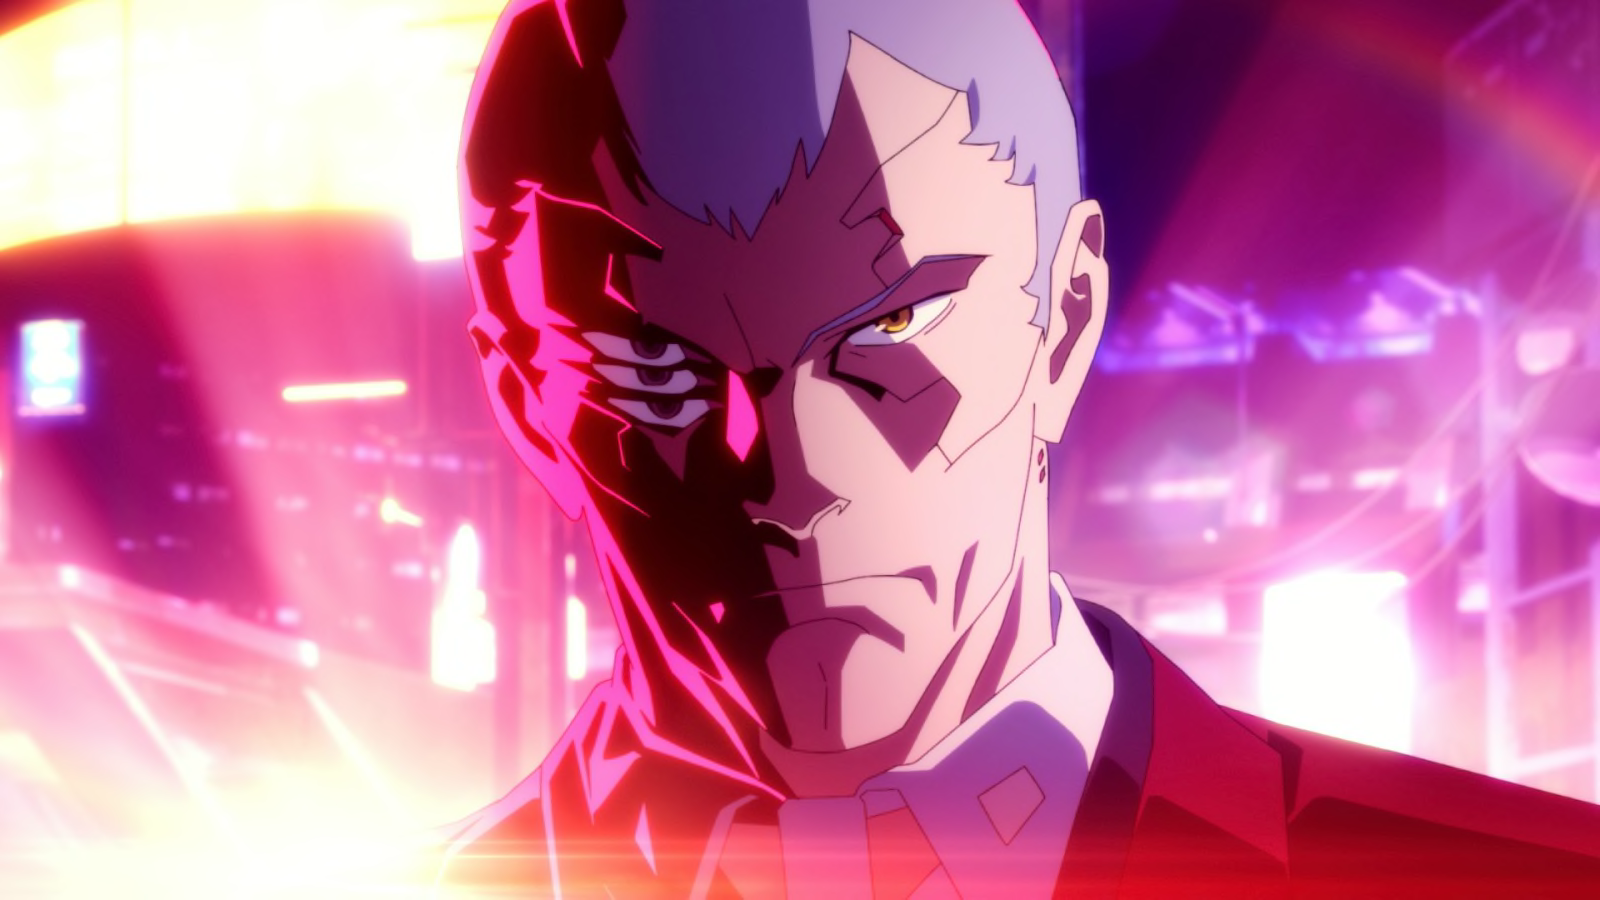 Cyberpunk: Edgerunners anime series coming to Netflix - CNET